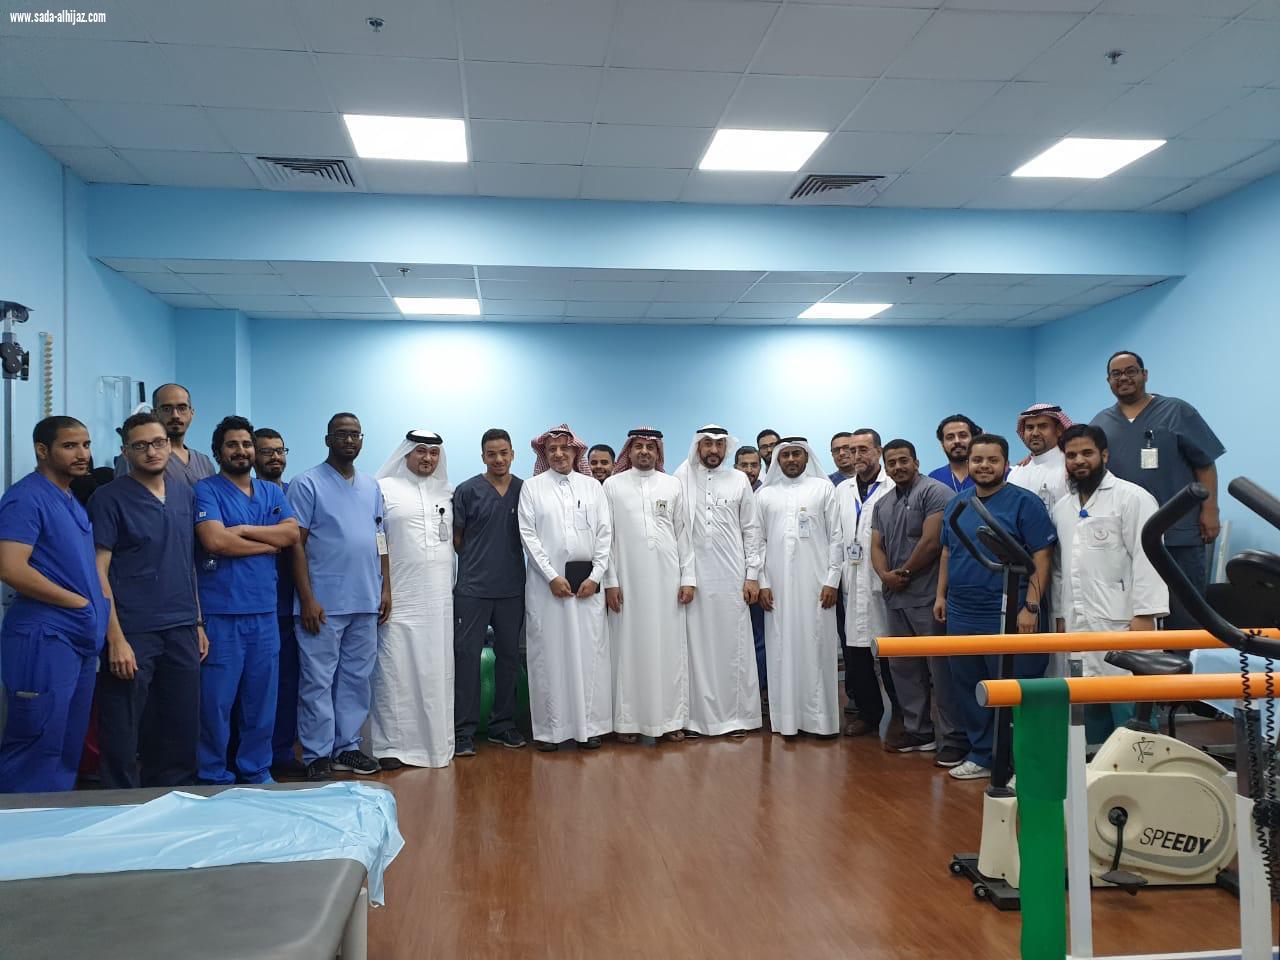 تأهيل مستشفى الملك فهد العام بالمدينة يجتاز مشروع تحسين جودة الخدمة